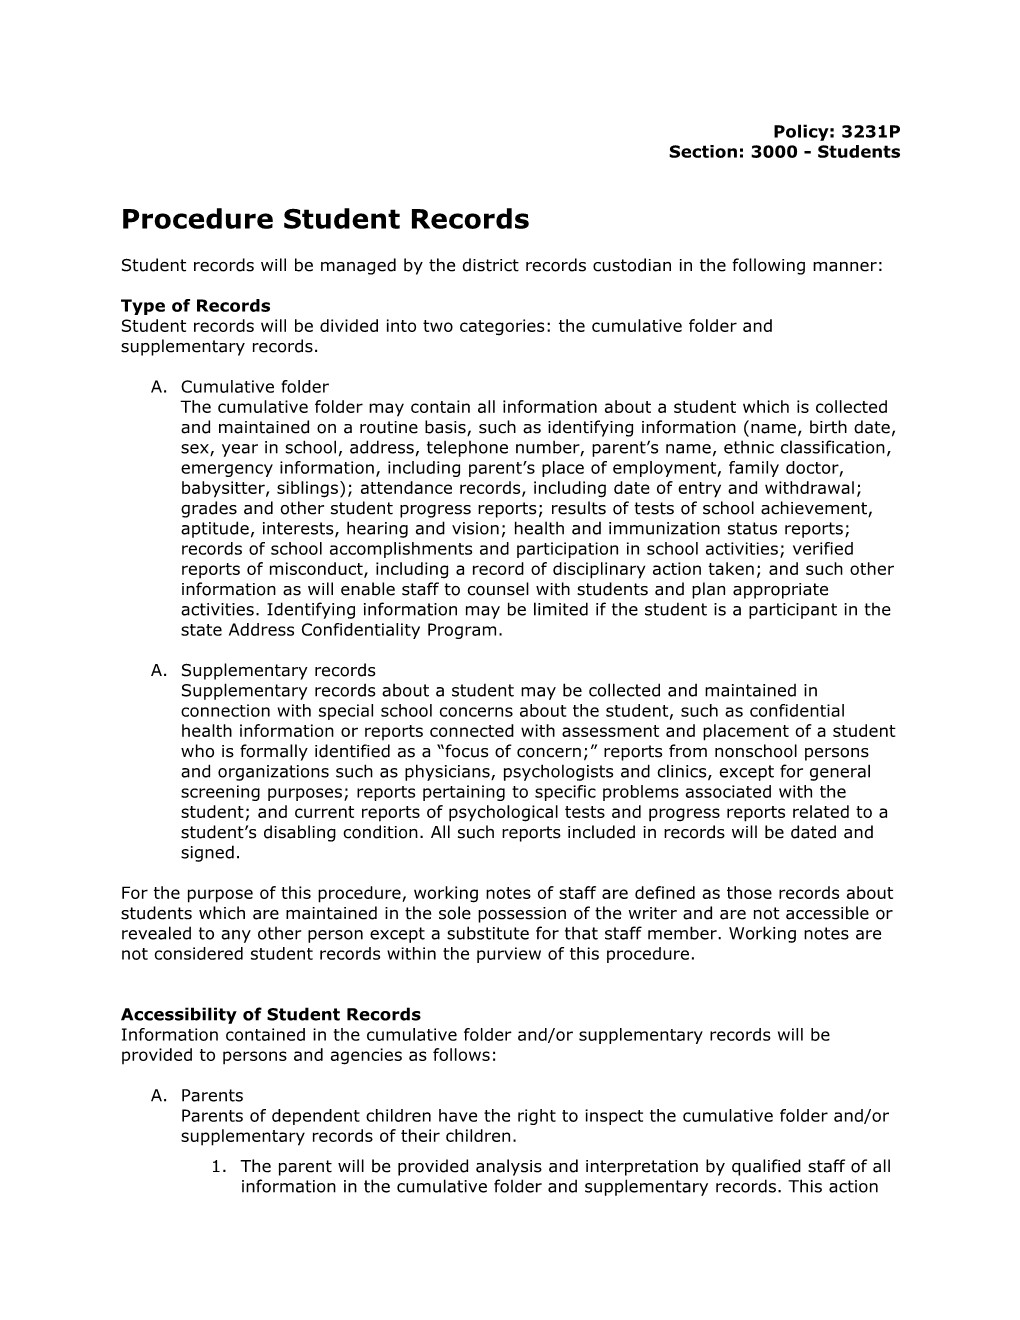 Procedure Student Records